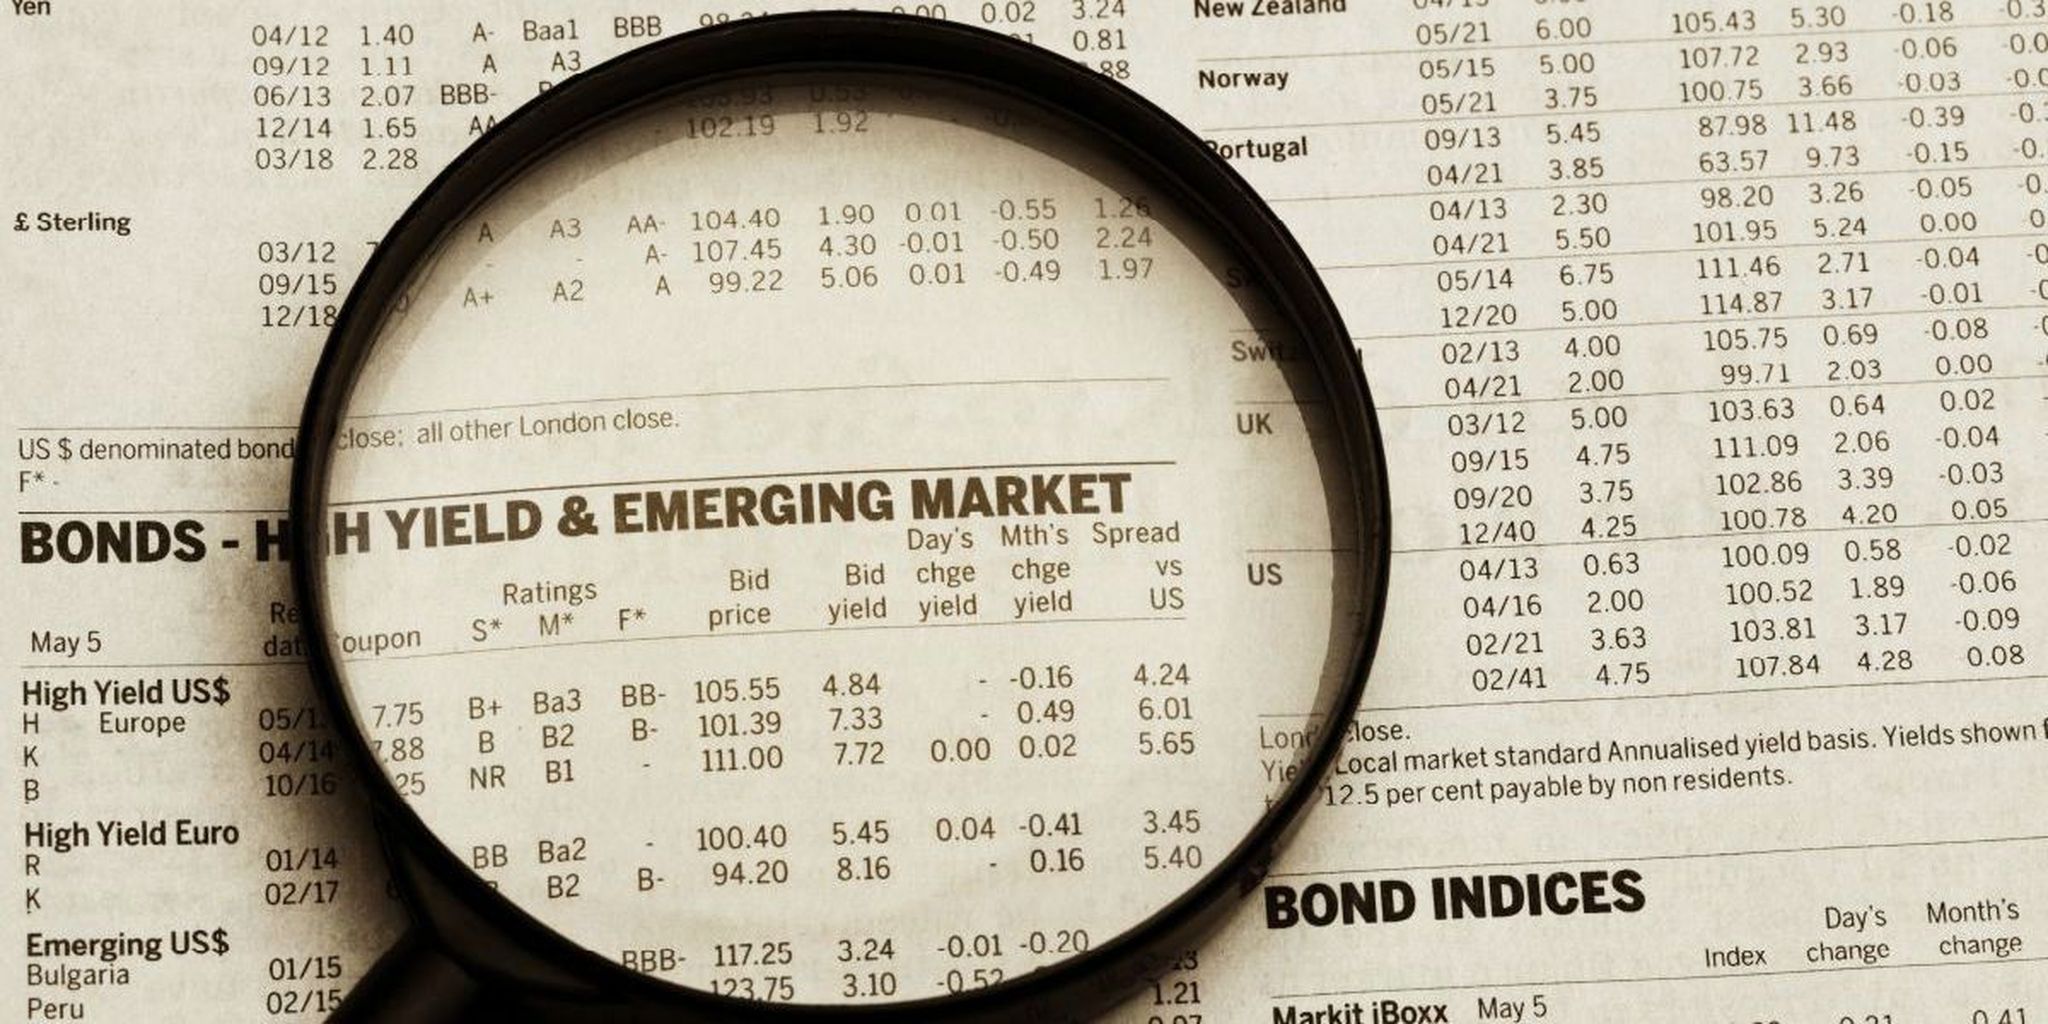 Rabobang sedang menuju untuk membeli obligasi pasar negara berkembang